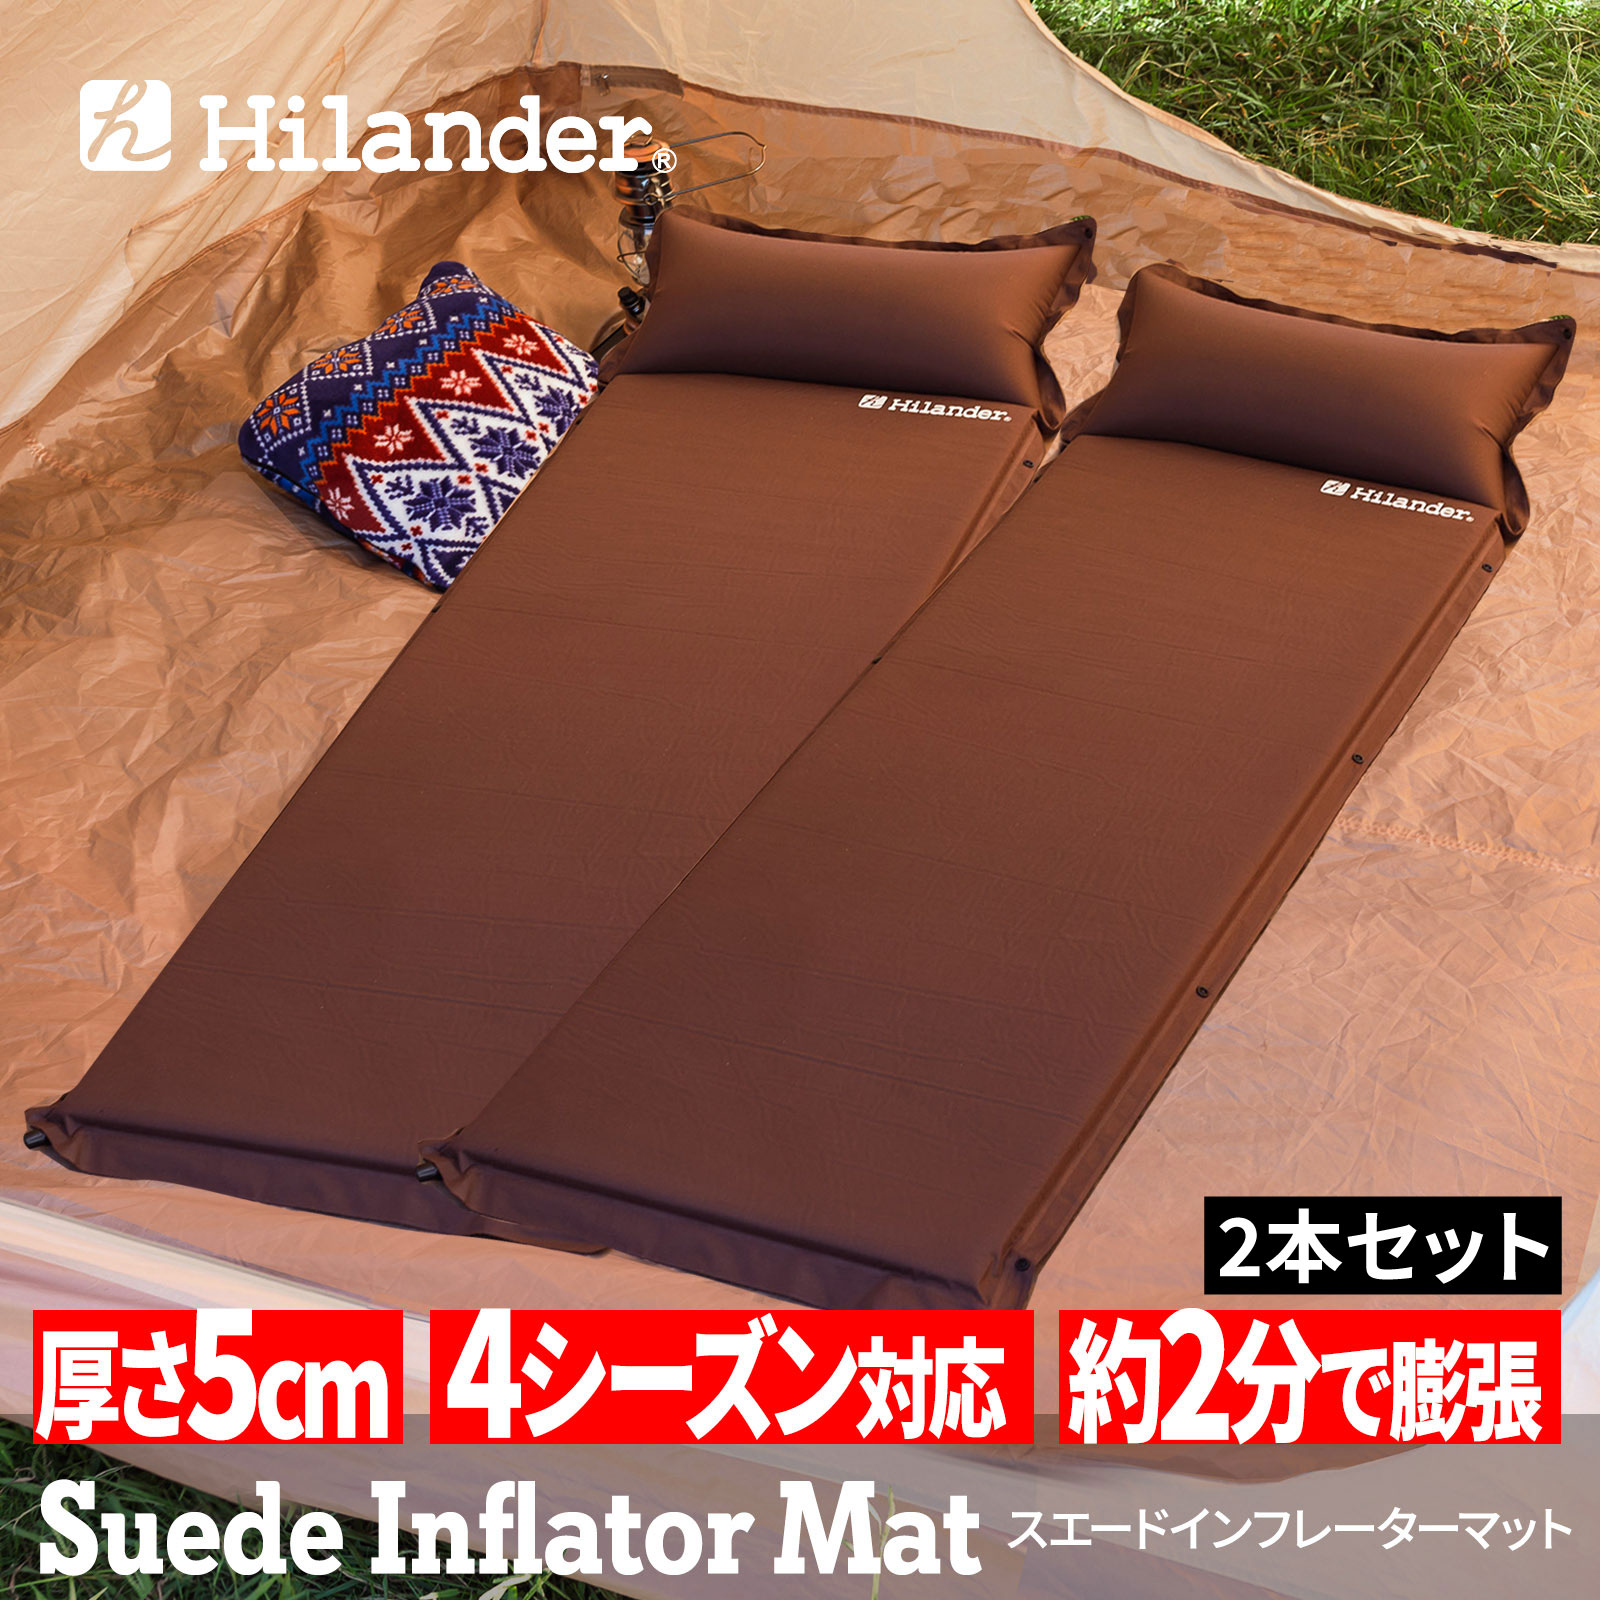 スエードインフレーターマット(枕付きタイプ) 5.0cm【お得な2点セット】 シングル(2本) ブラウン